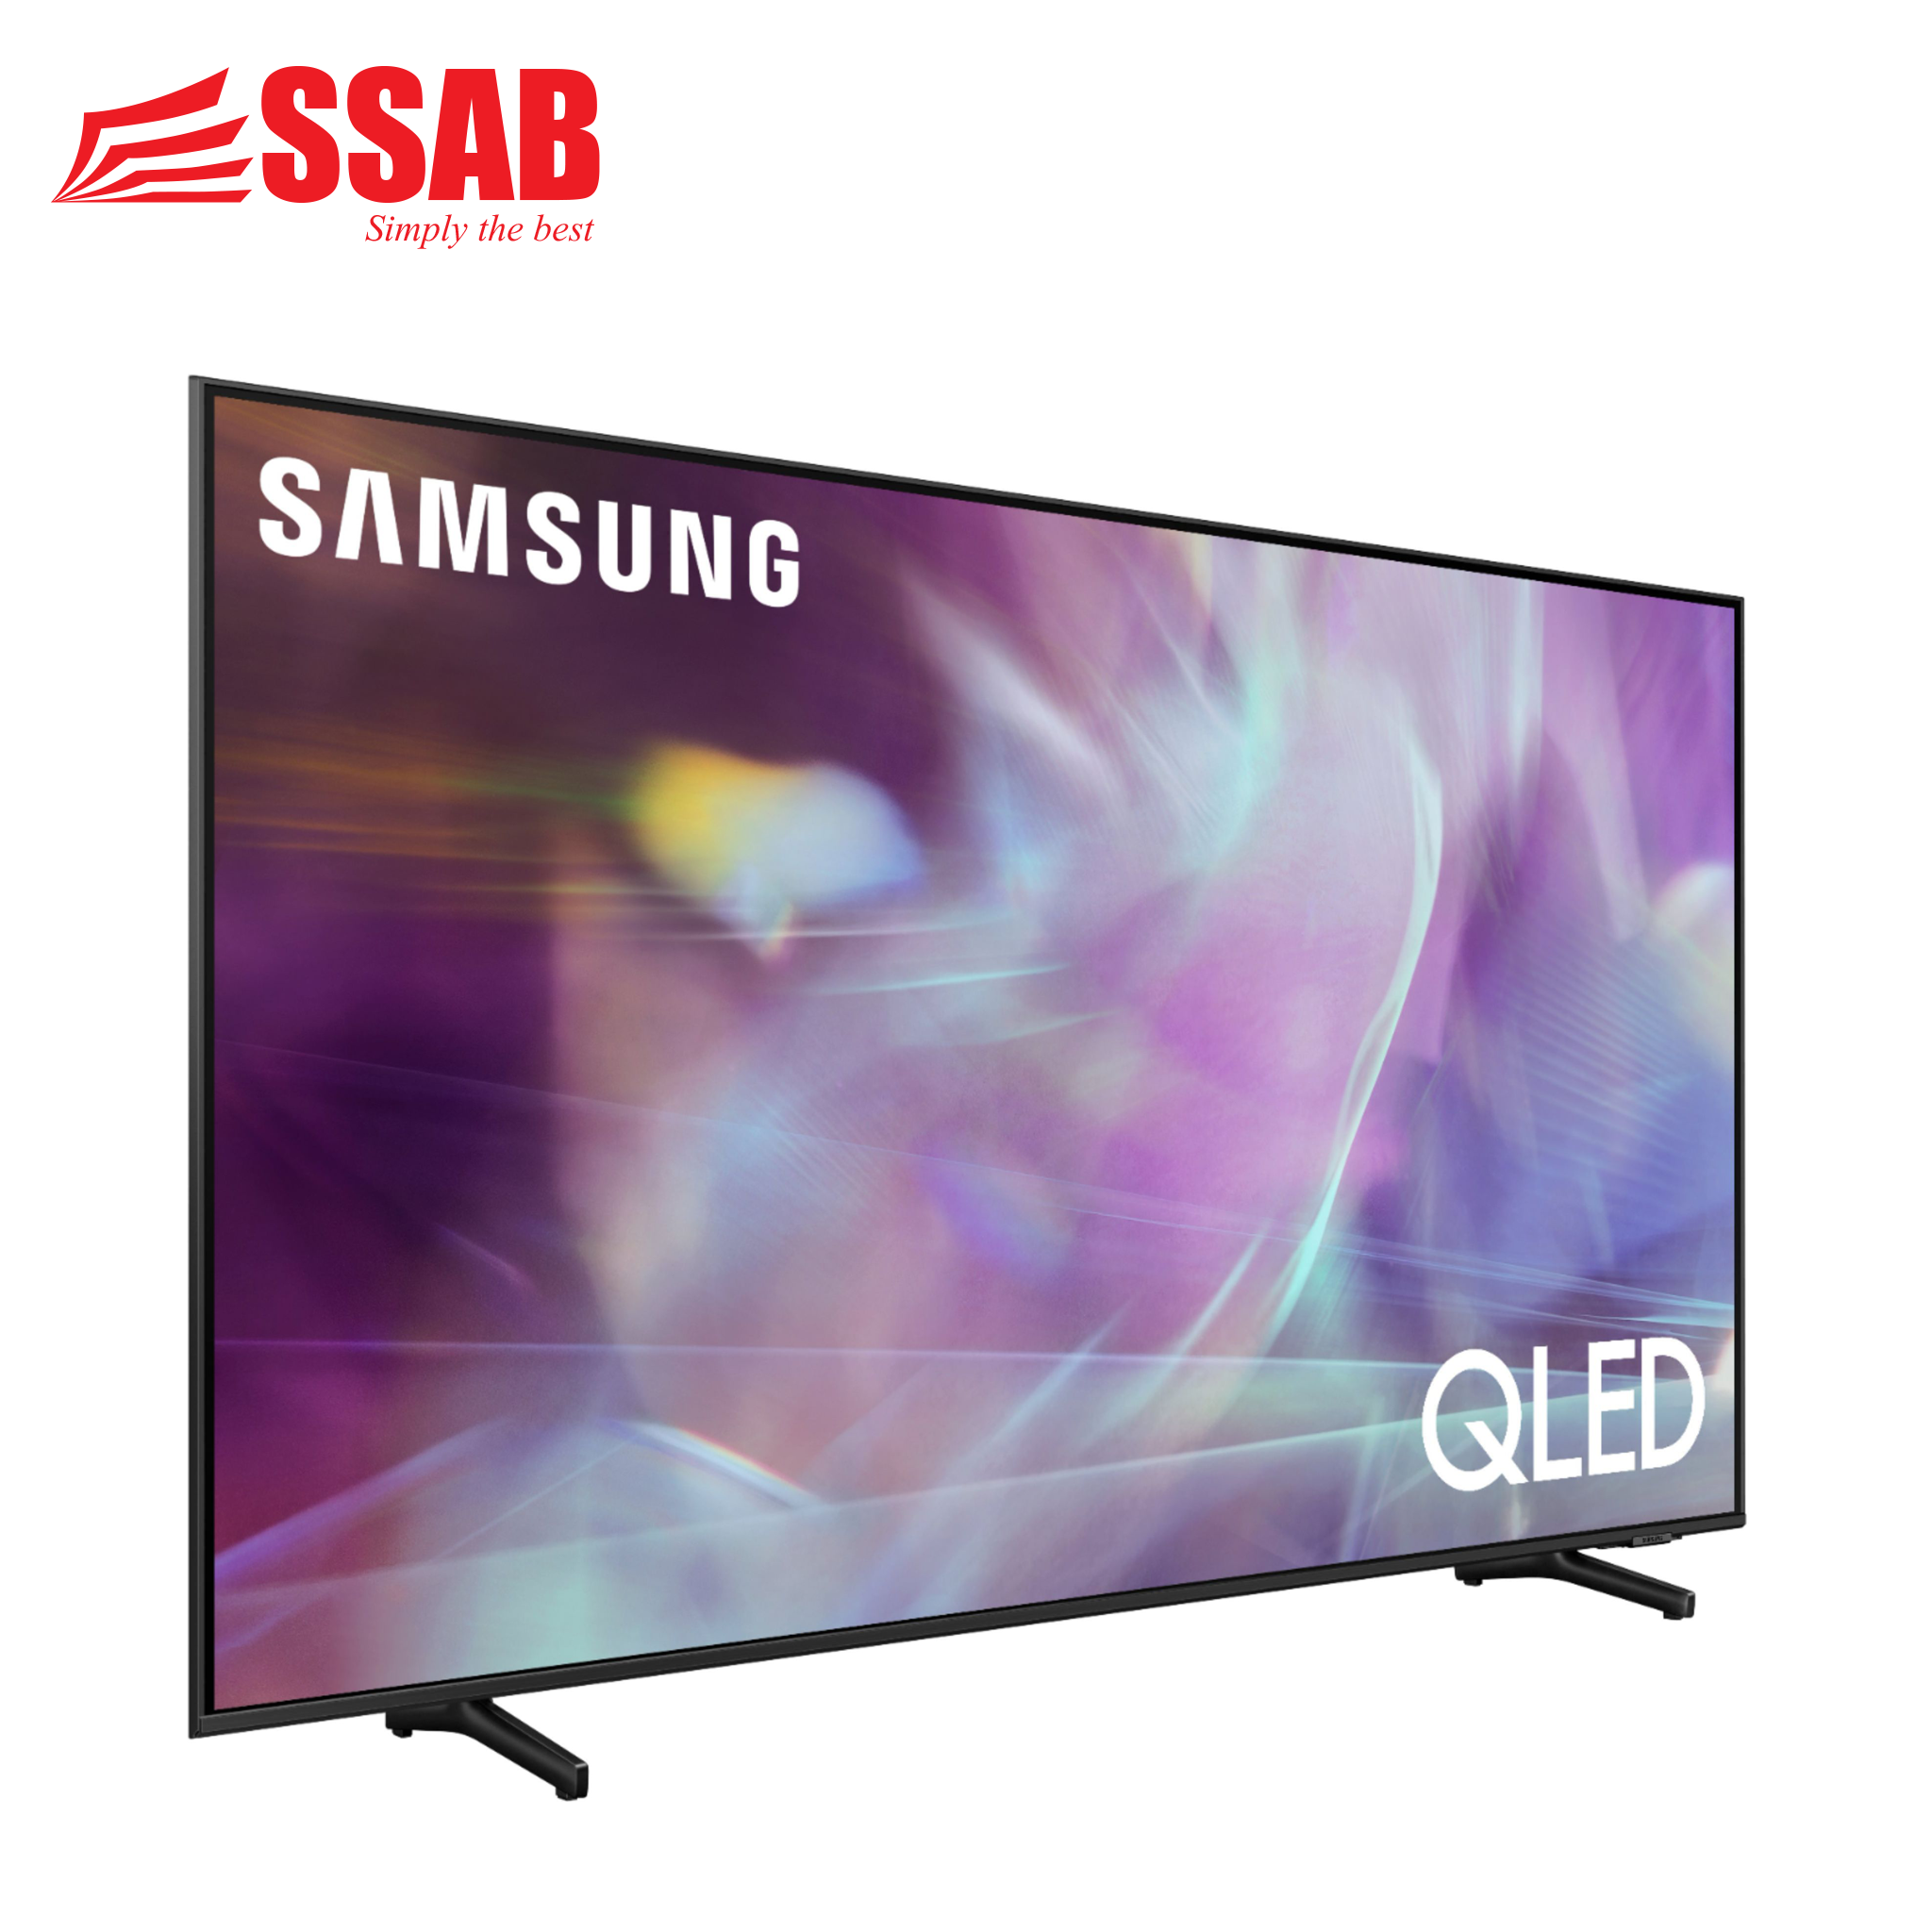 Samsung 85" LED Smart TV